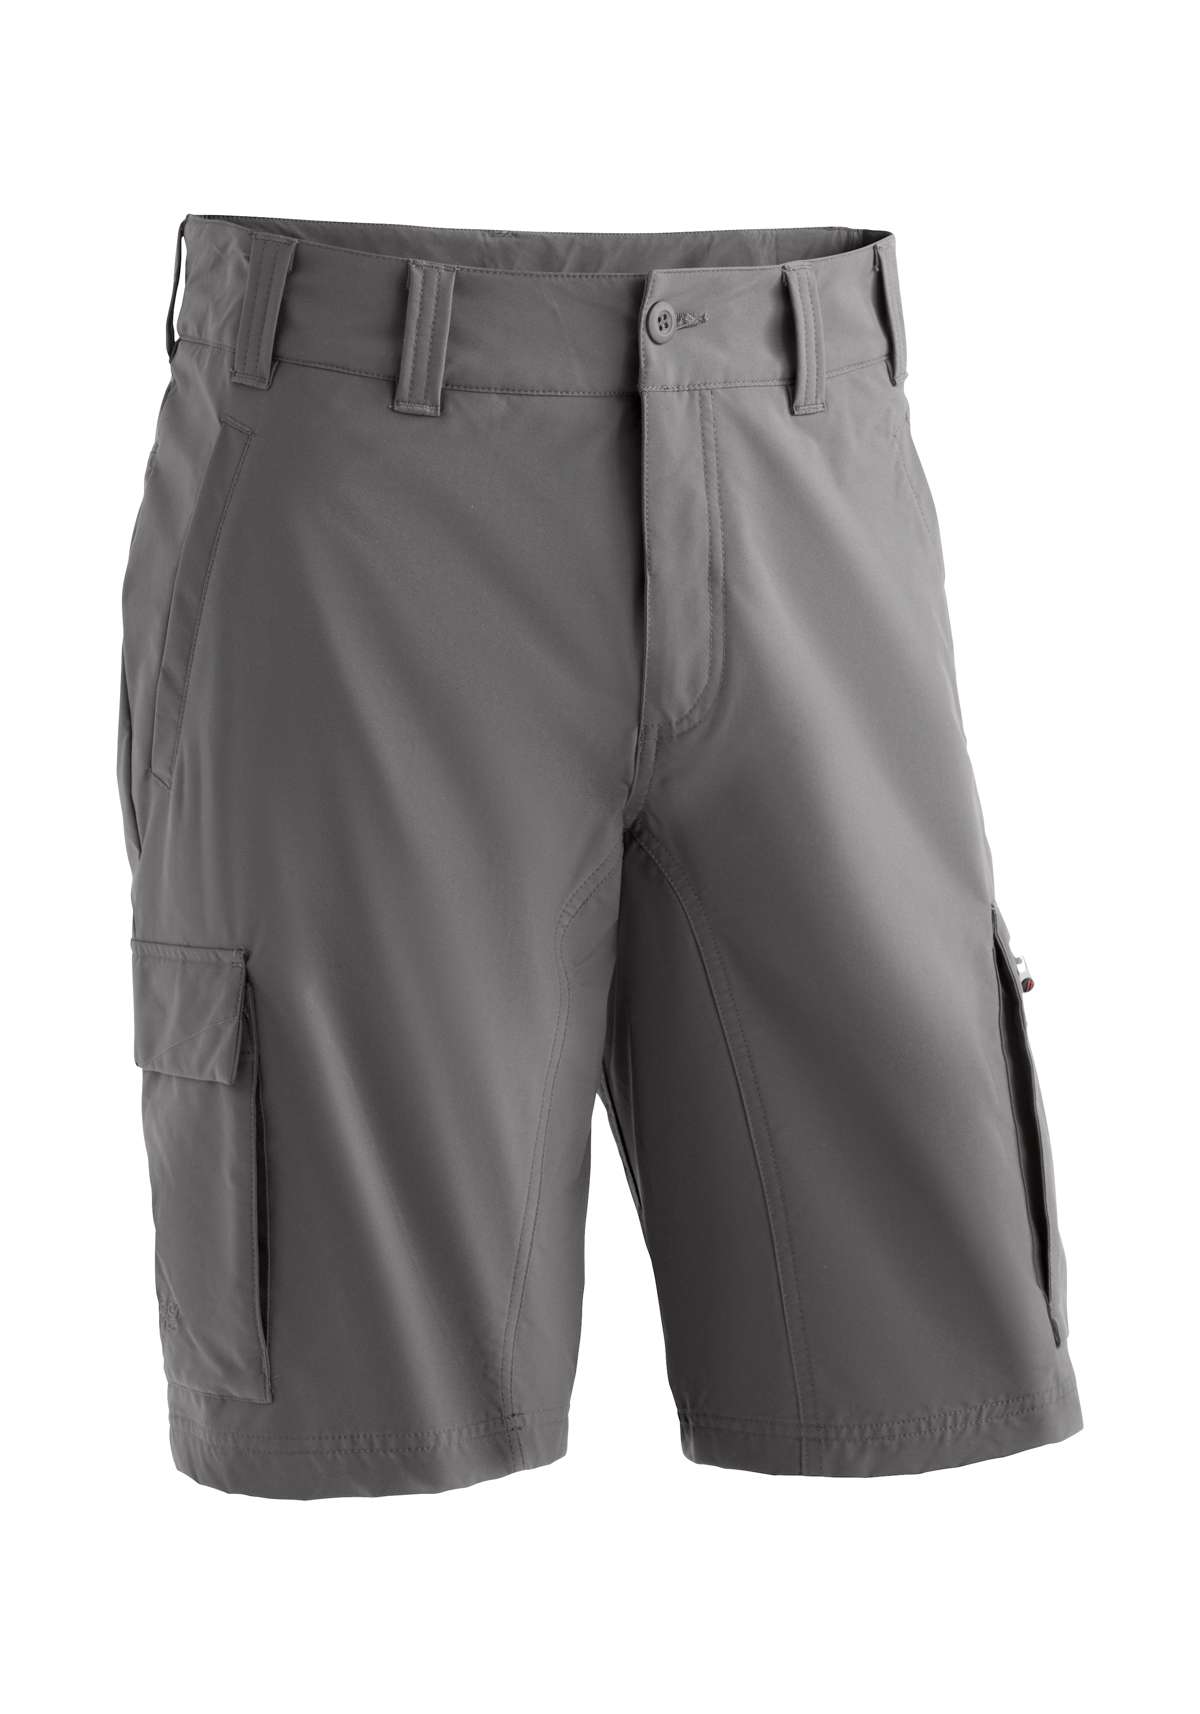 Бермуды-карго, короткие мужские походные брюки, современные бермуды для активного отдыха...